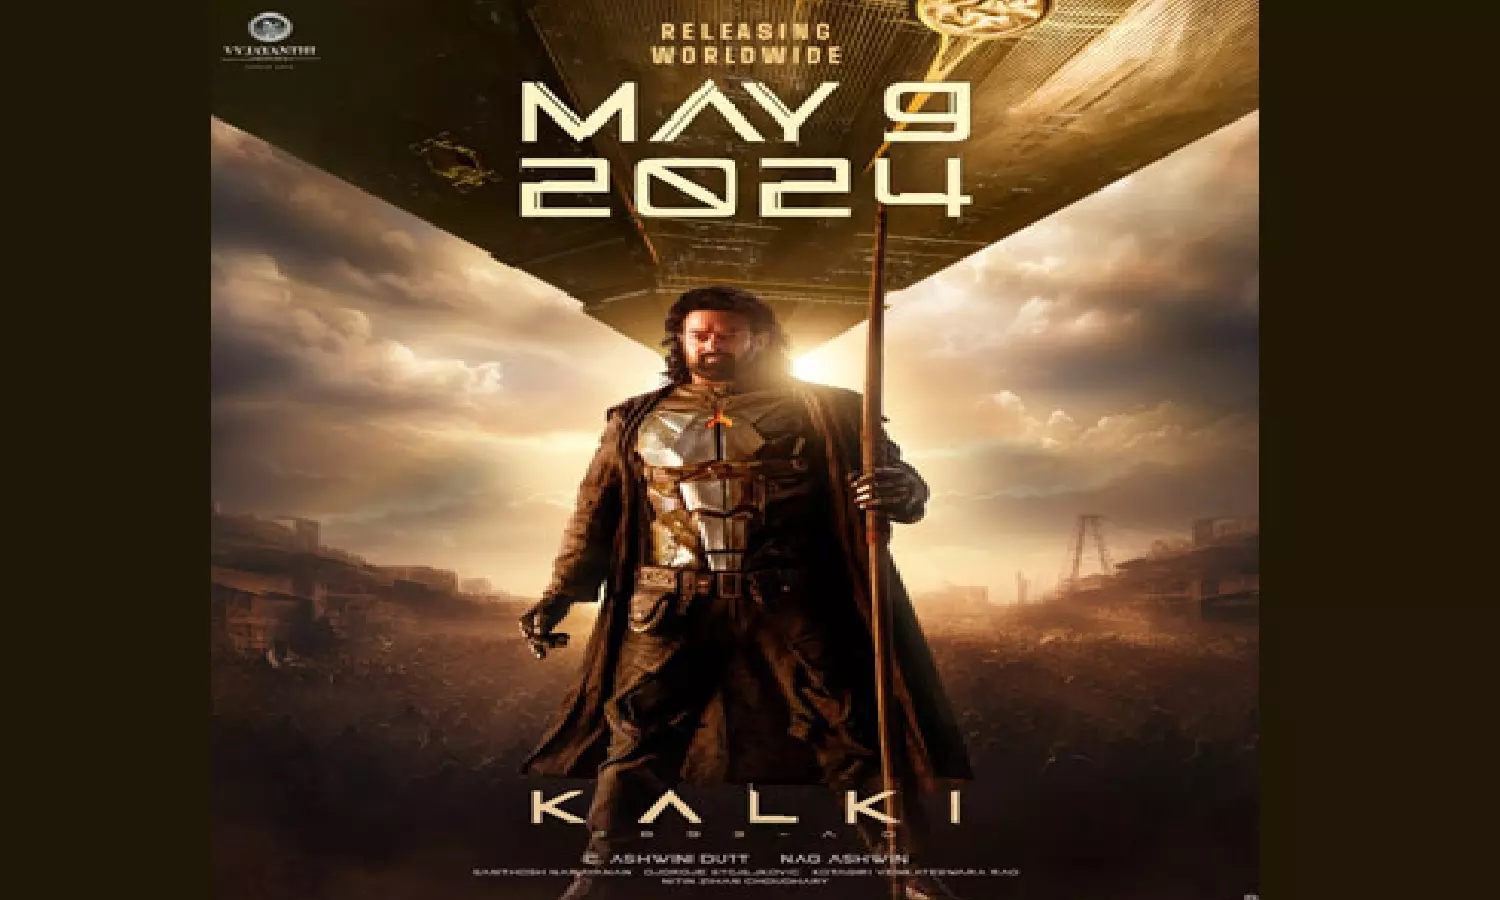 Kalki 2898 AD Story: प्रभास की फिल्म कल्कि 2898 एडी में महाभारत से लेकर फ्यूचर तक की कहानी